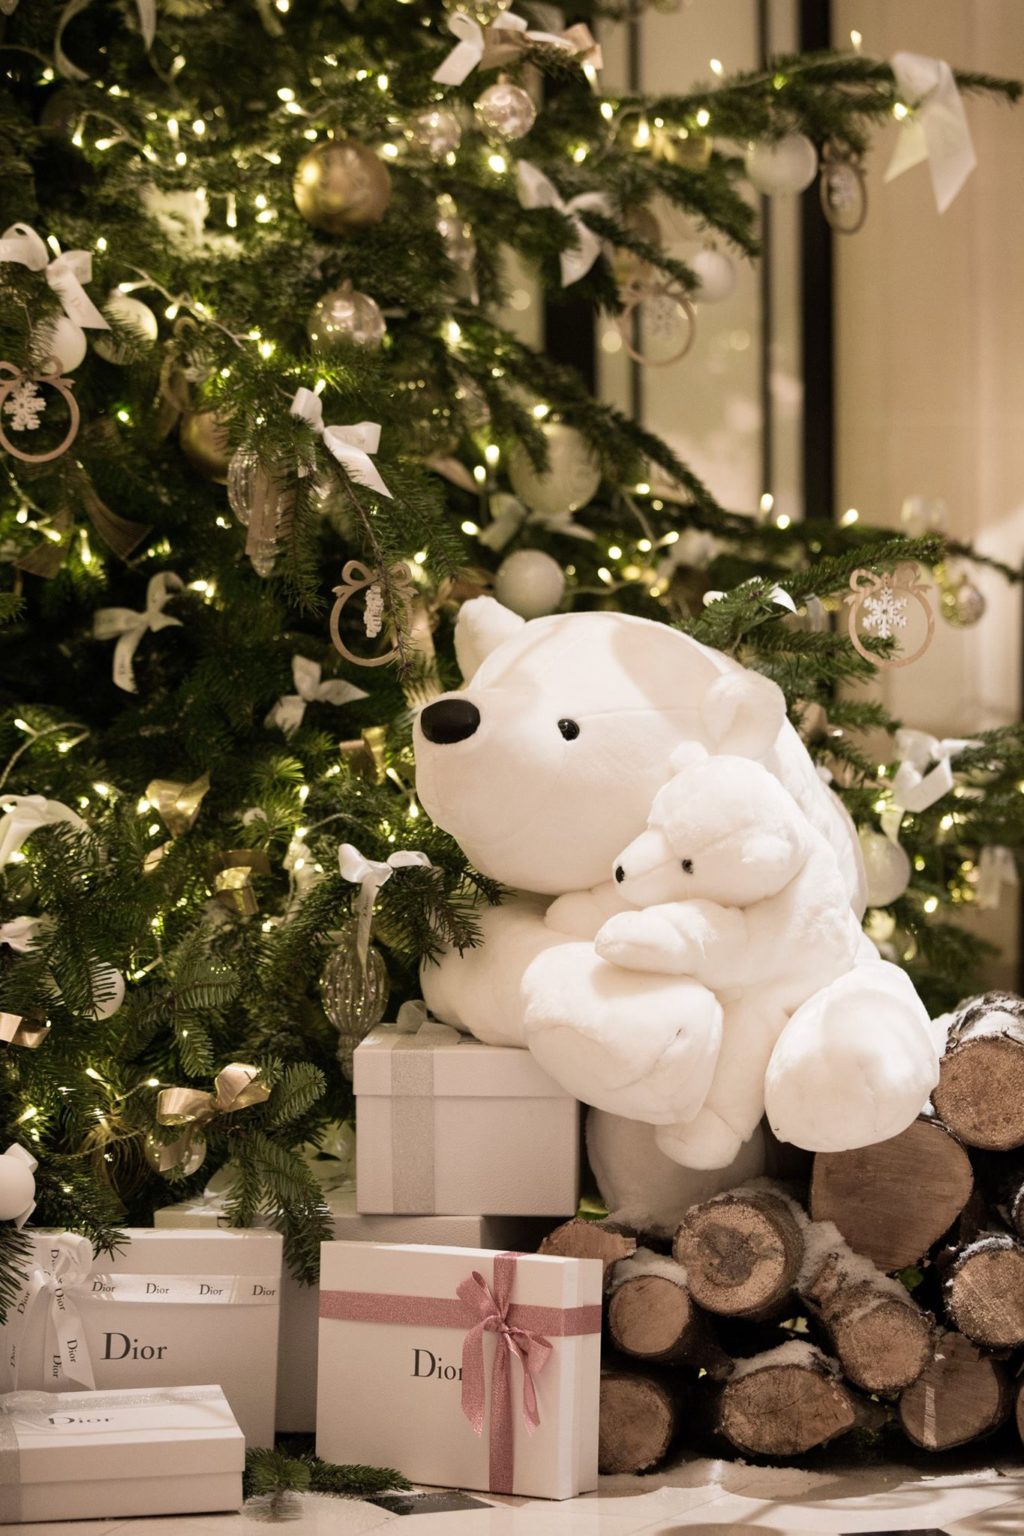 Dior Creates Christmas Tree for the Plaza Athénée